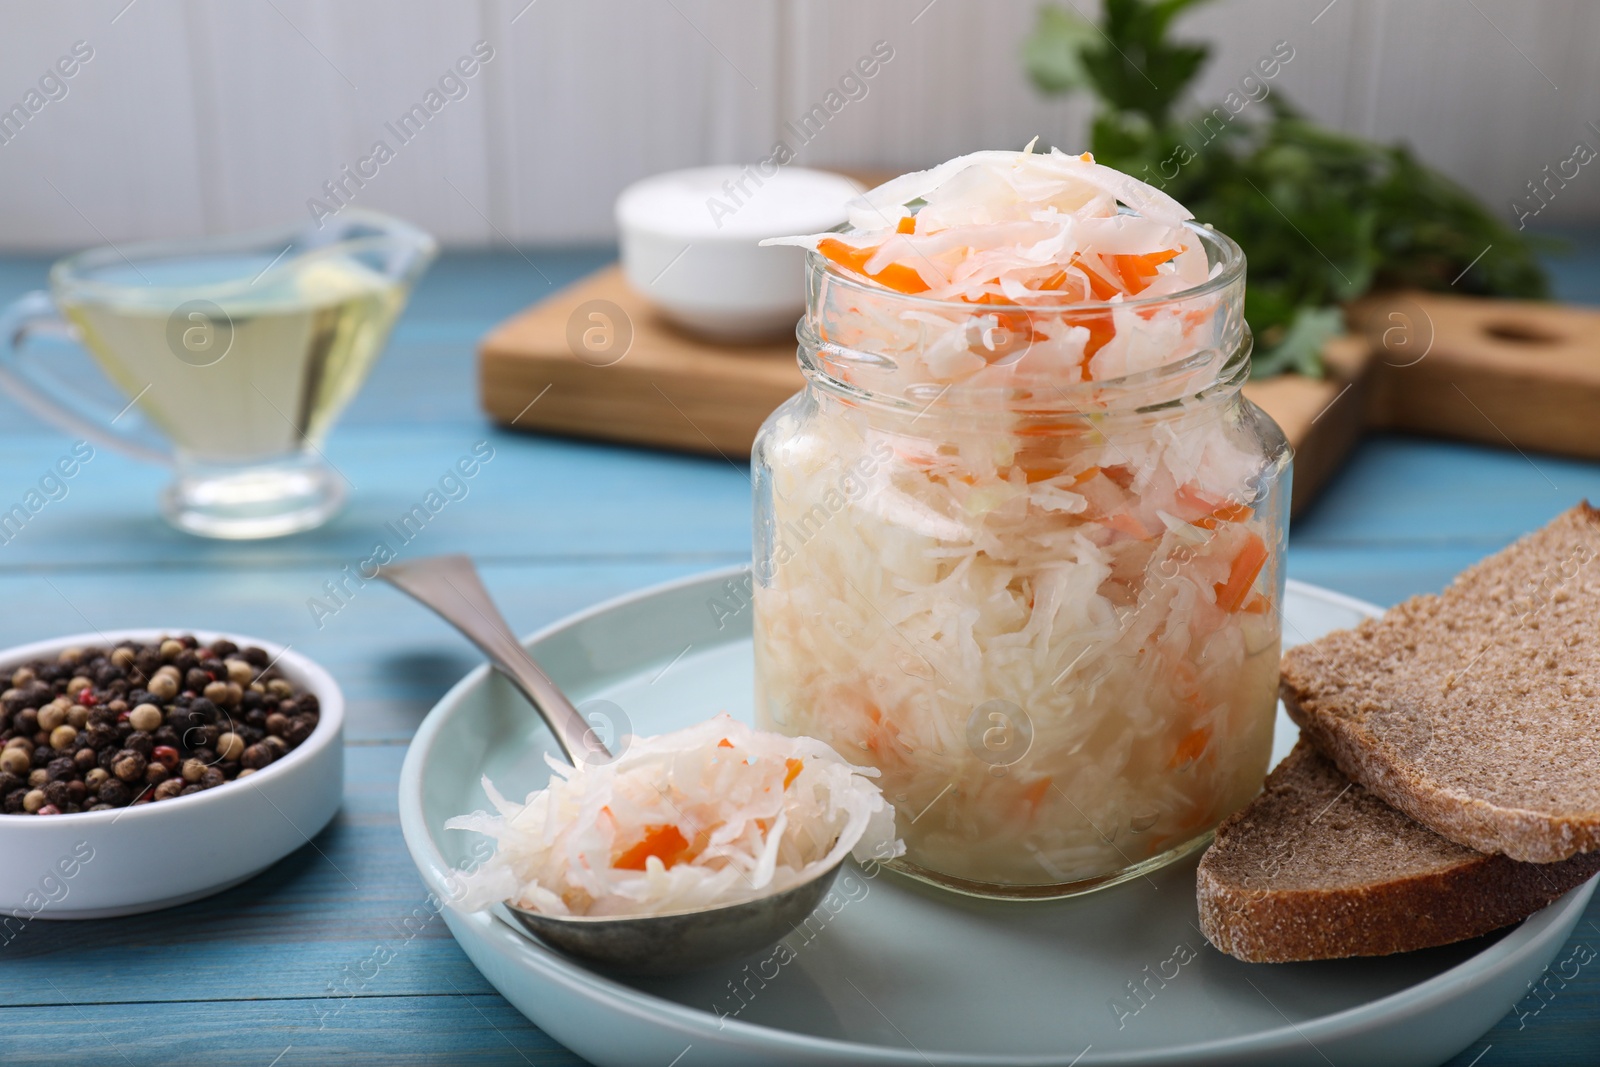 Photo of Tasty sauerkraut on light blue wooden table